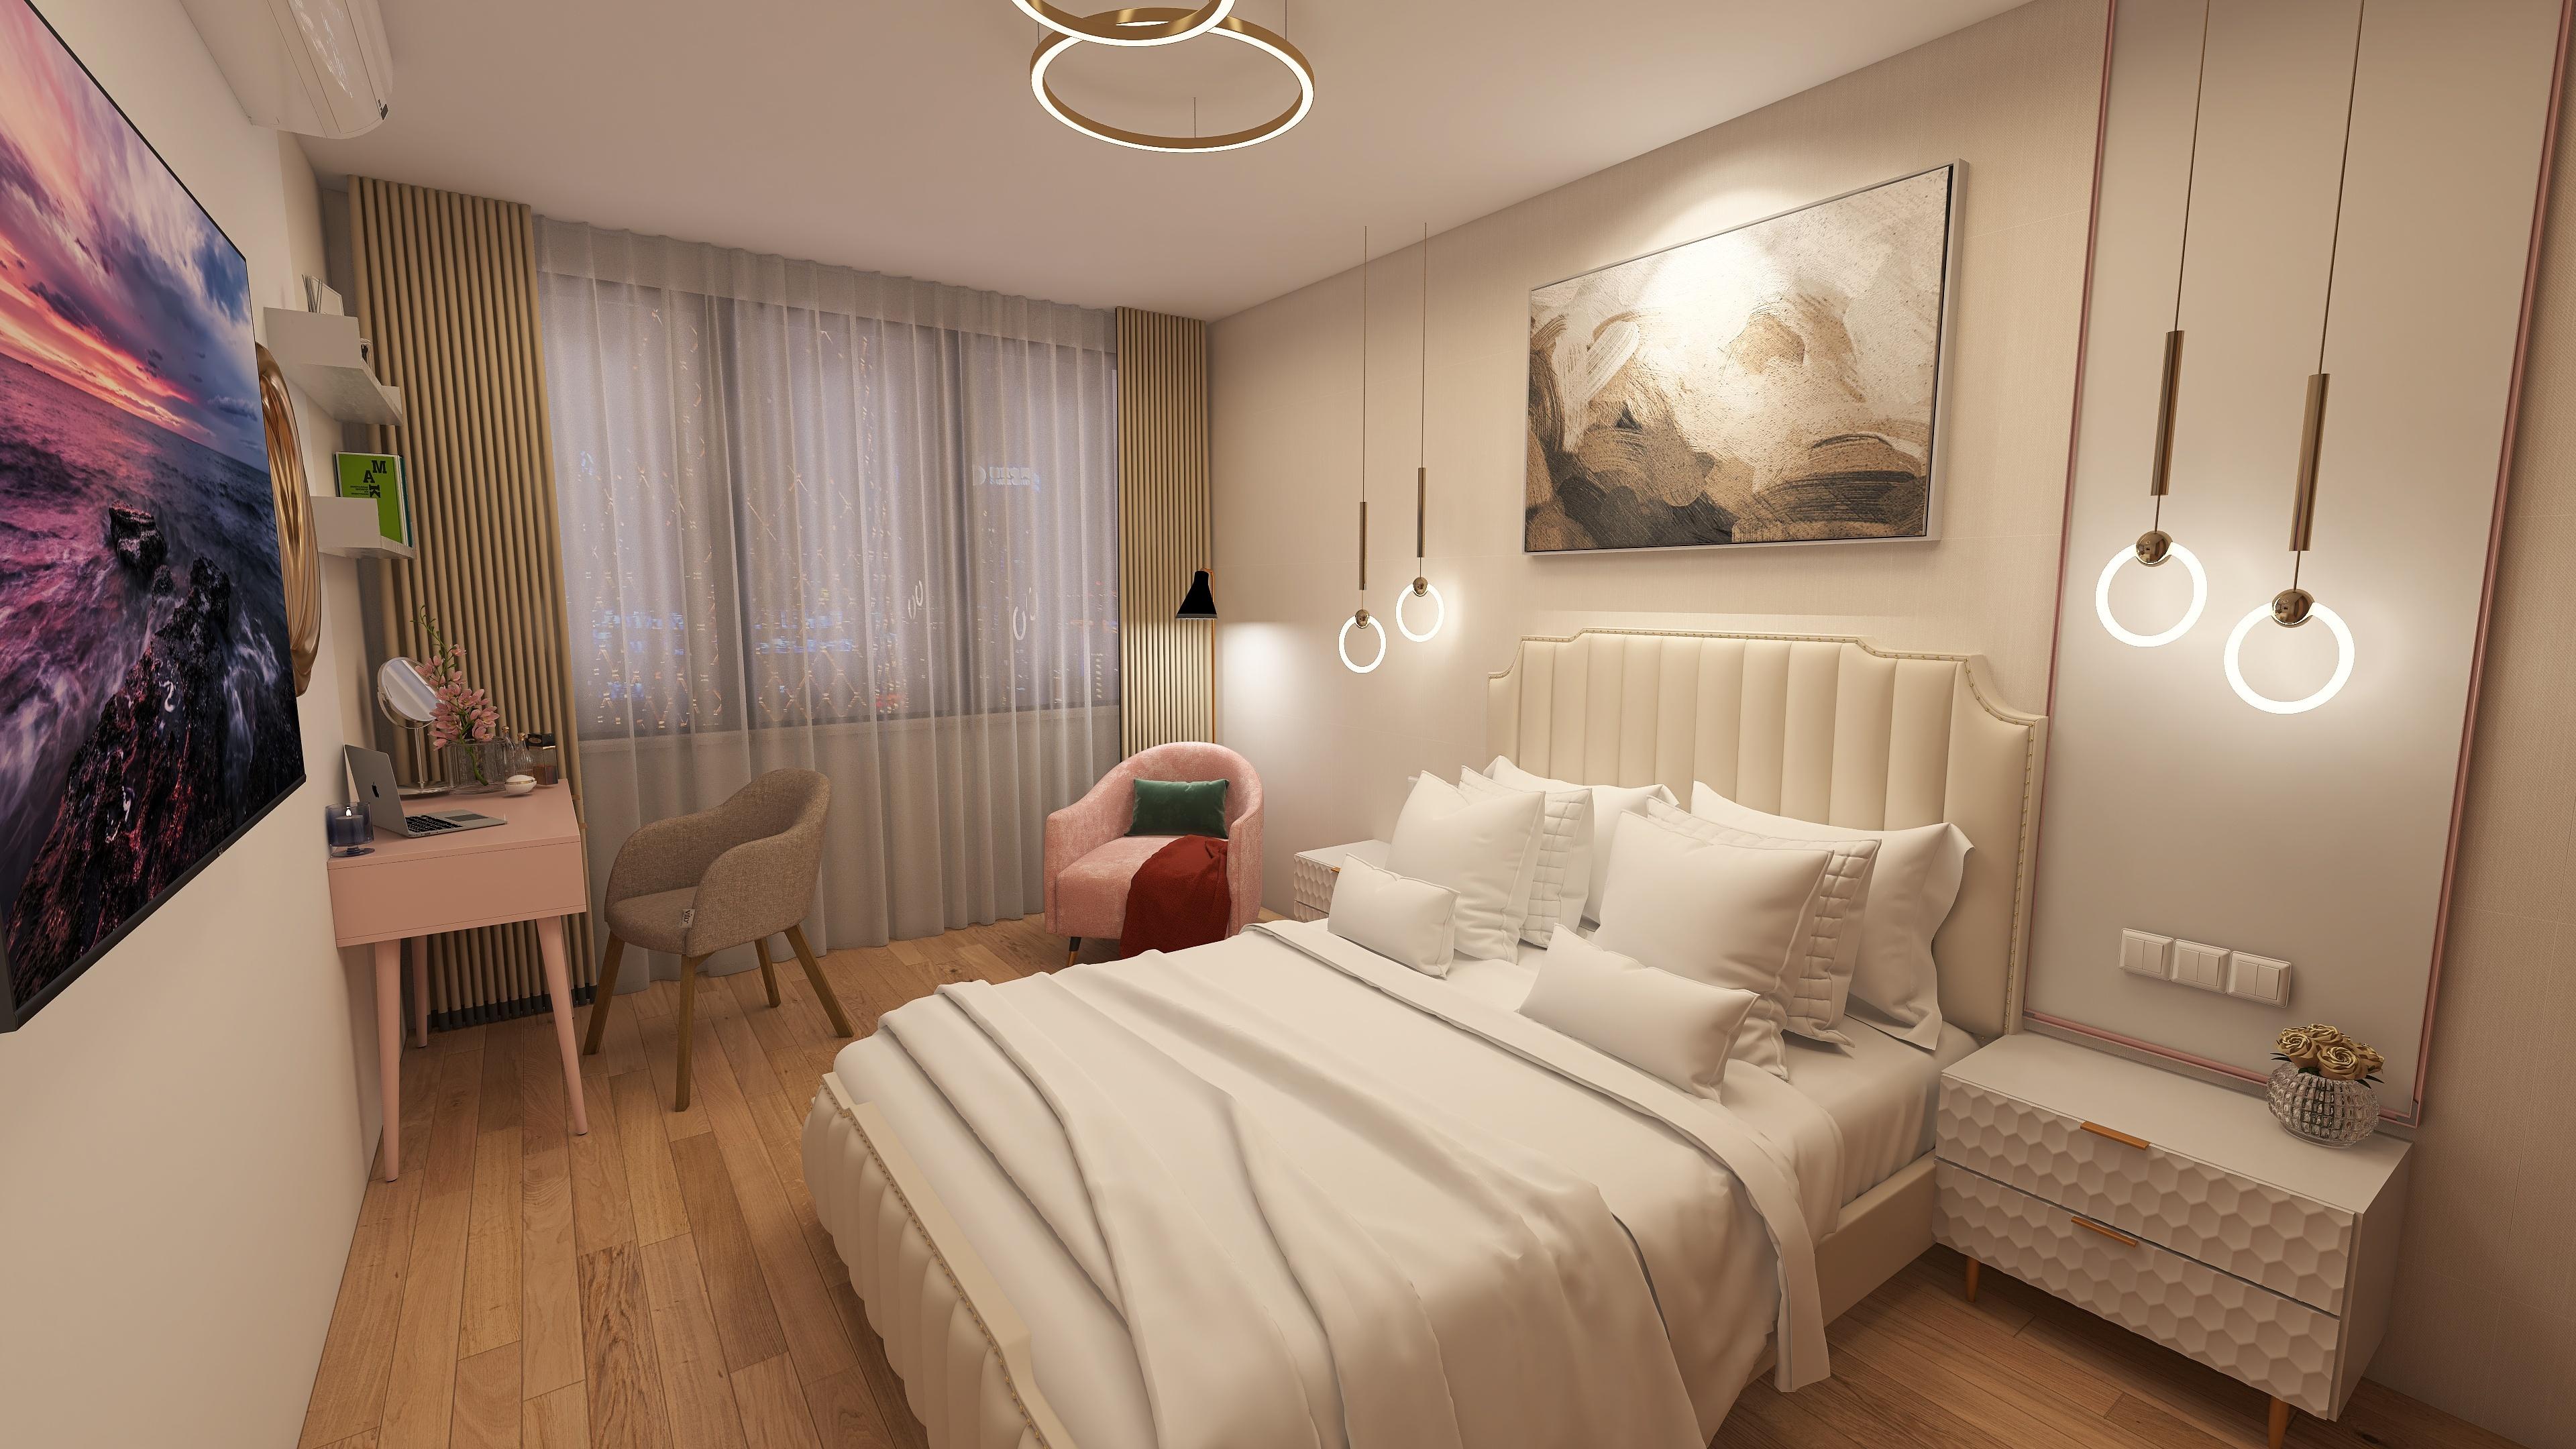 Интерьер спальни с подсветкой настенной, подсветкой светодиодной и светильниками над кроватью